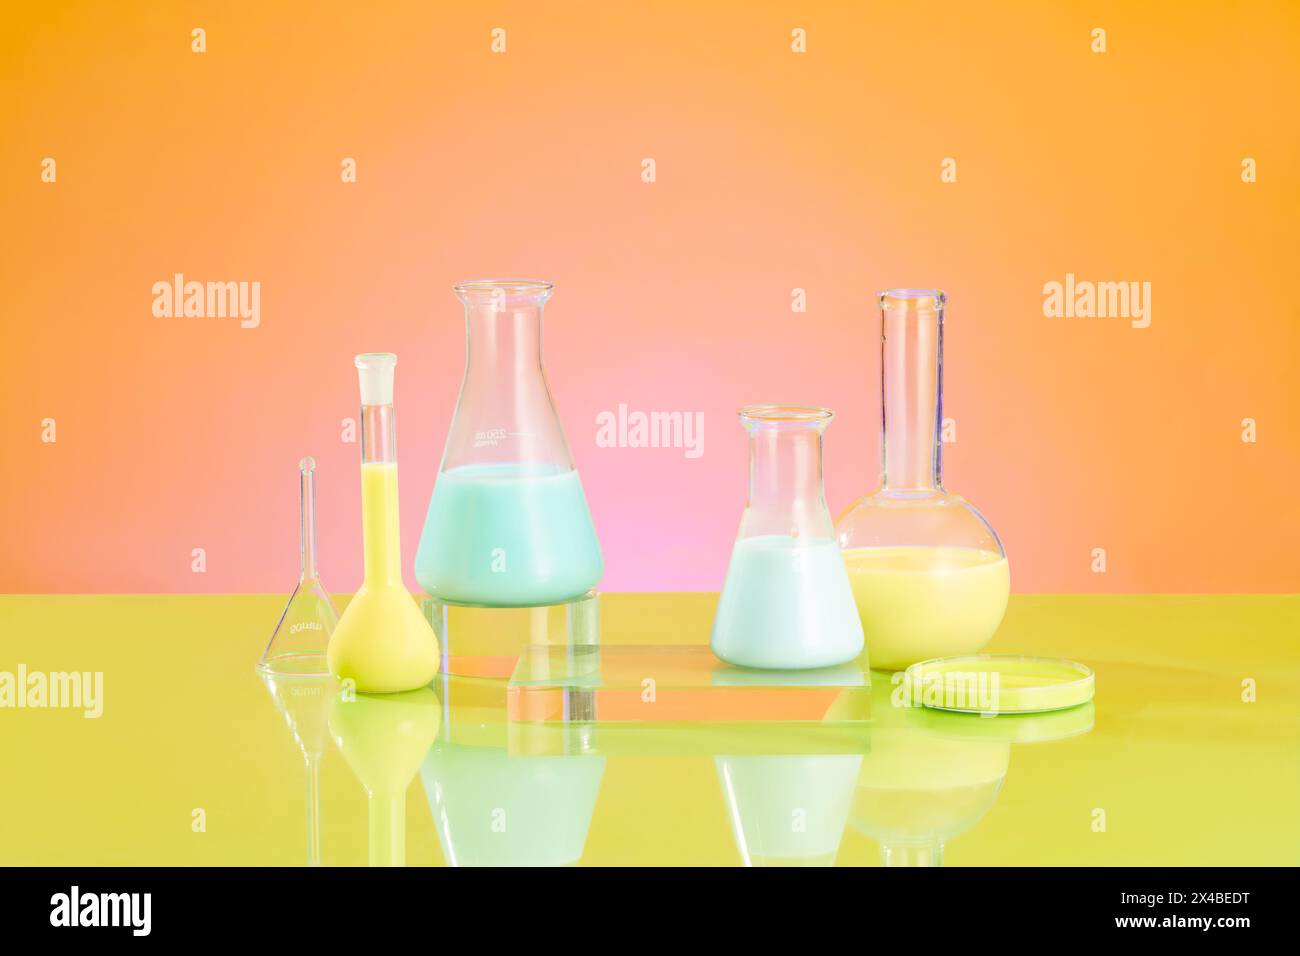 Laborkonzept mit Laborgeräten - erlenmeyerkolben, Siedekolben und Petrischale gefüllte Farbflüssigkeit auf orangefarbenem Hintergrund. Platz für d Stockfoto